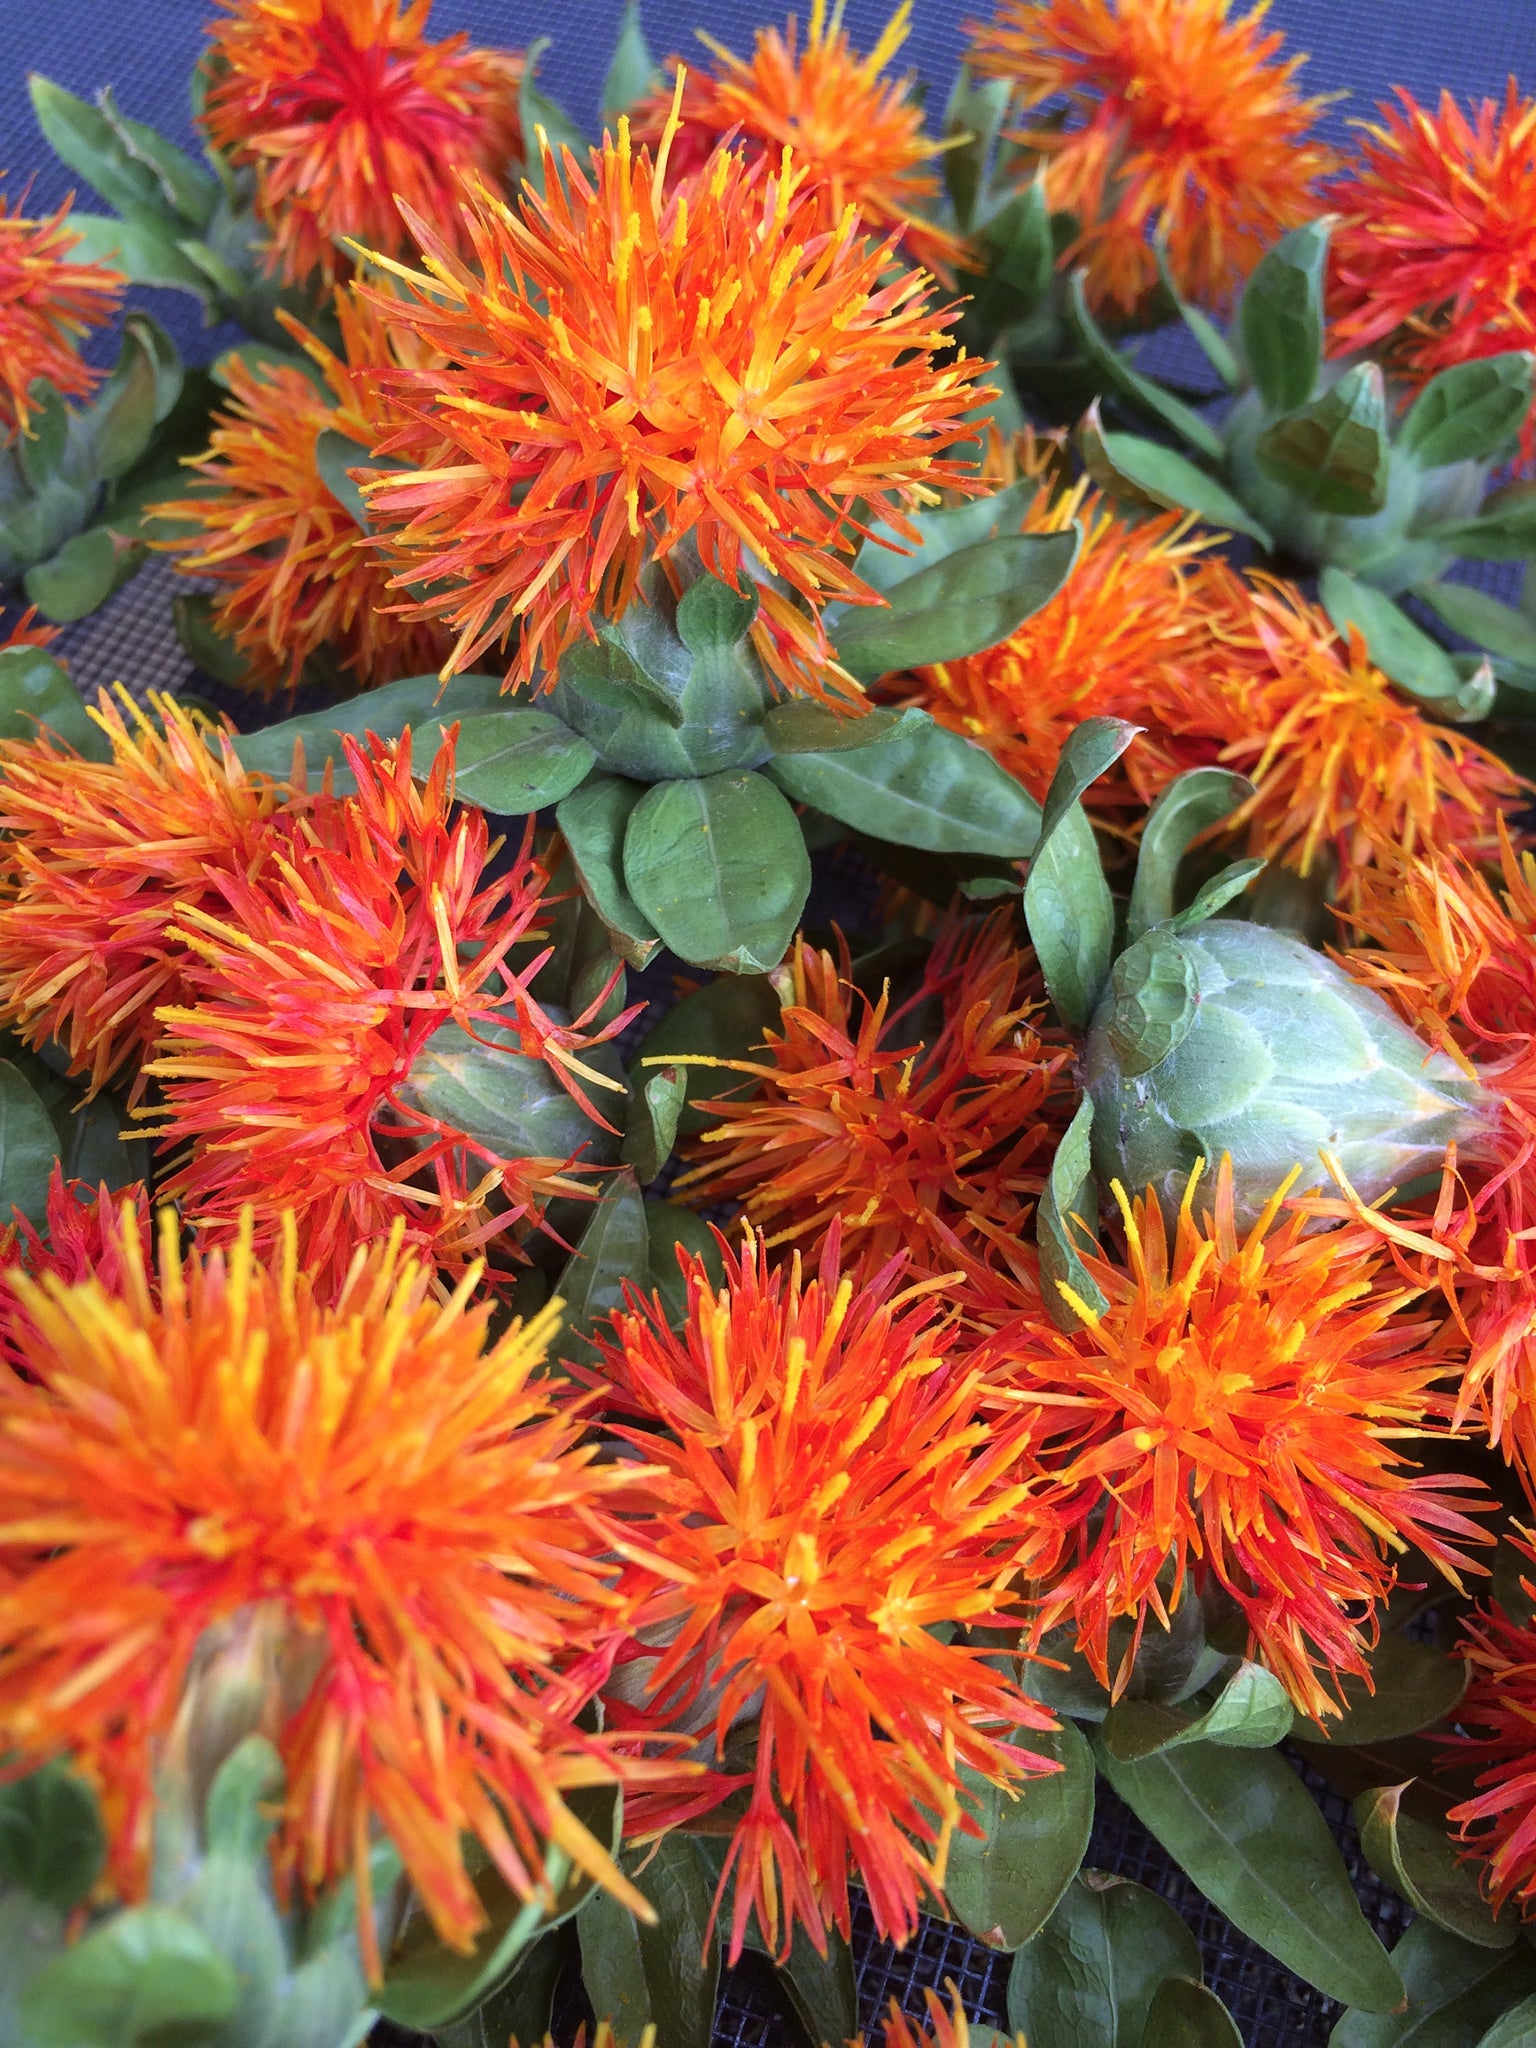 Safflower herb, dried Hong hua organic flower heads – Reverie Farm